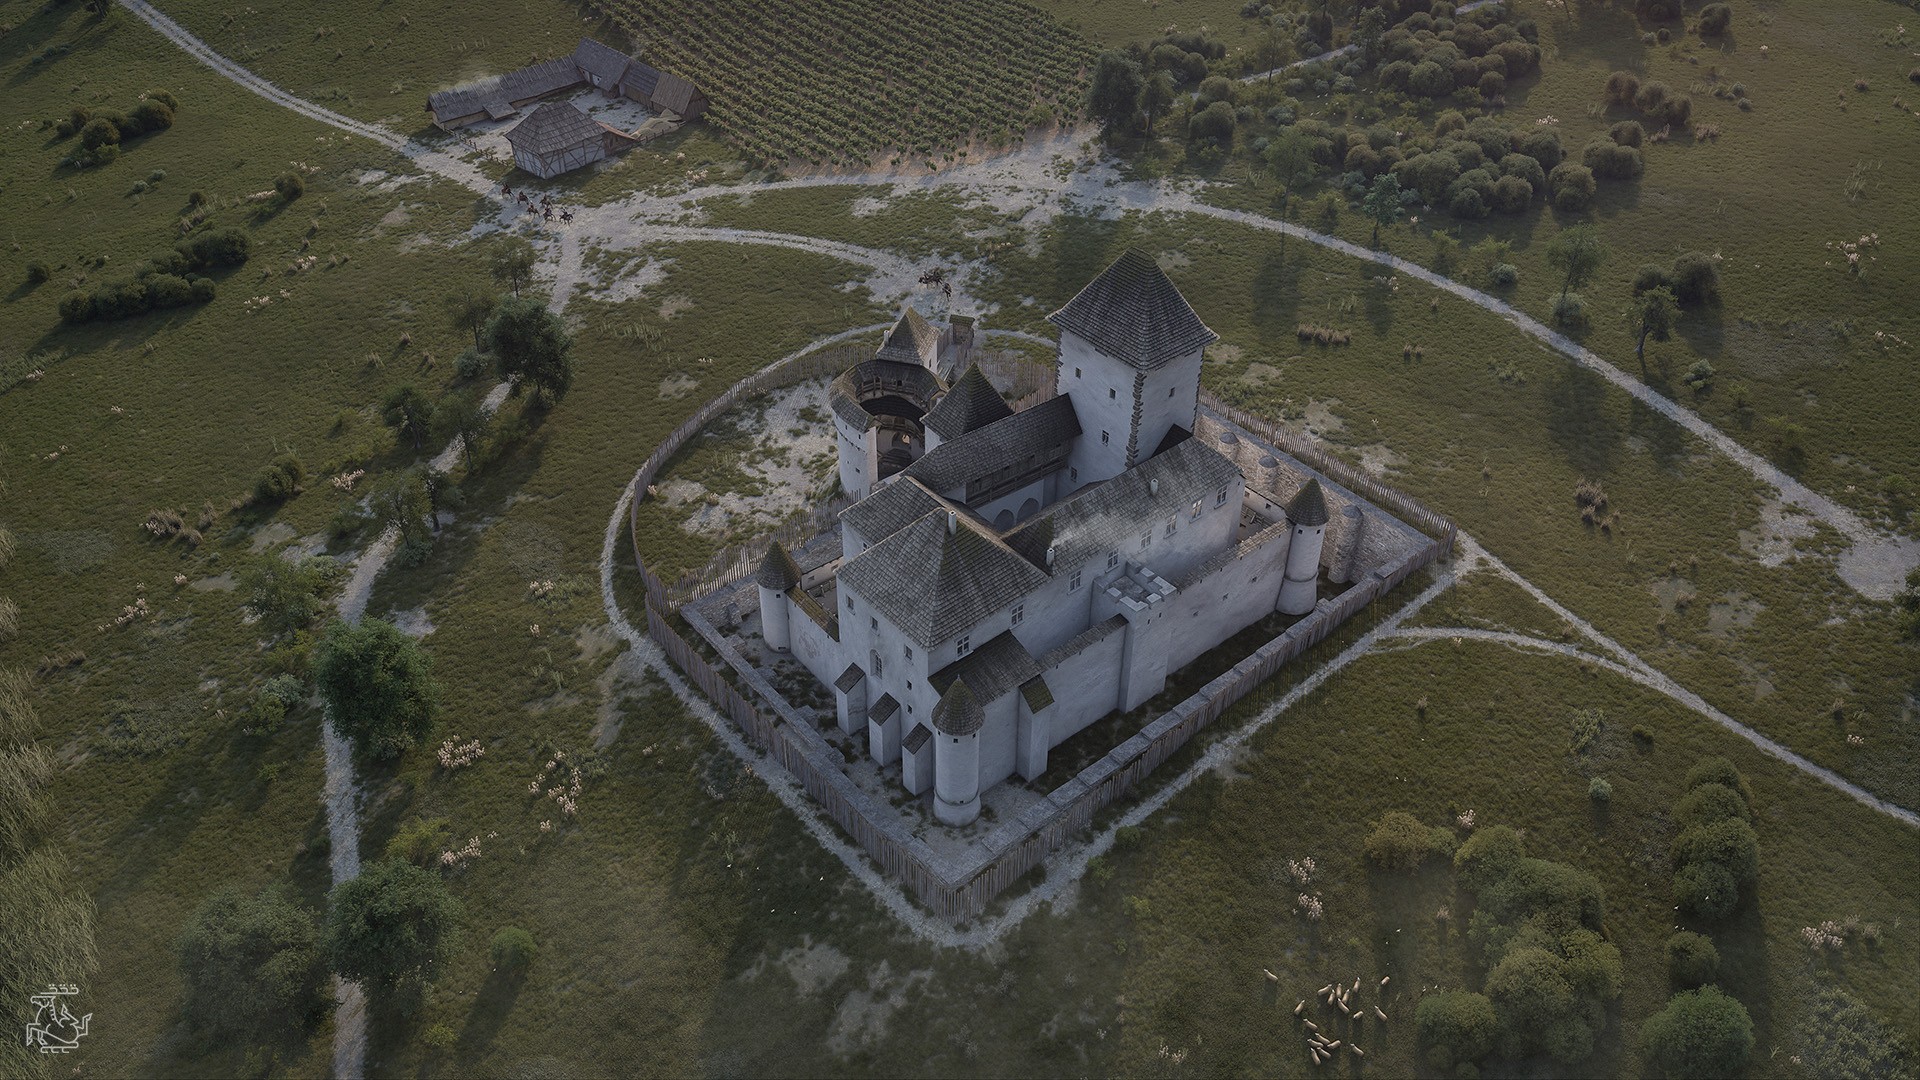 Nagyvázsonyi Castle, Reconstruction